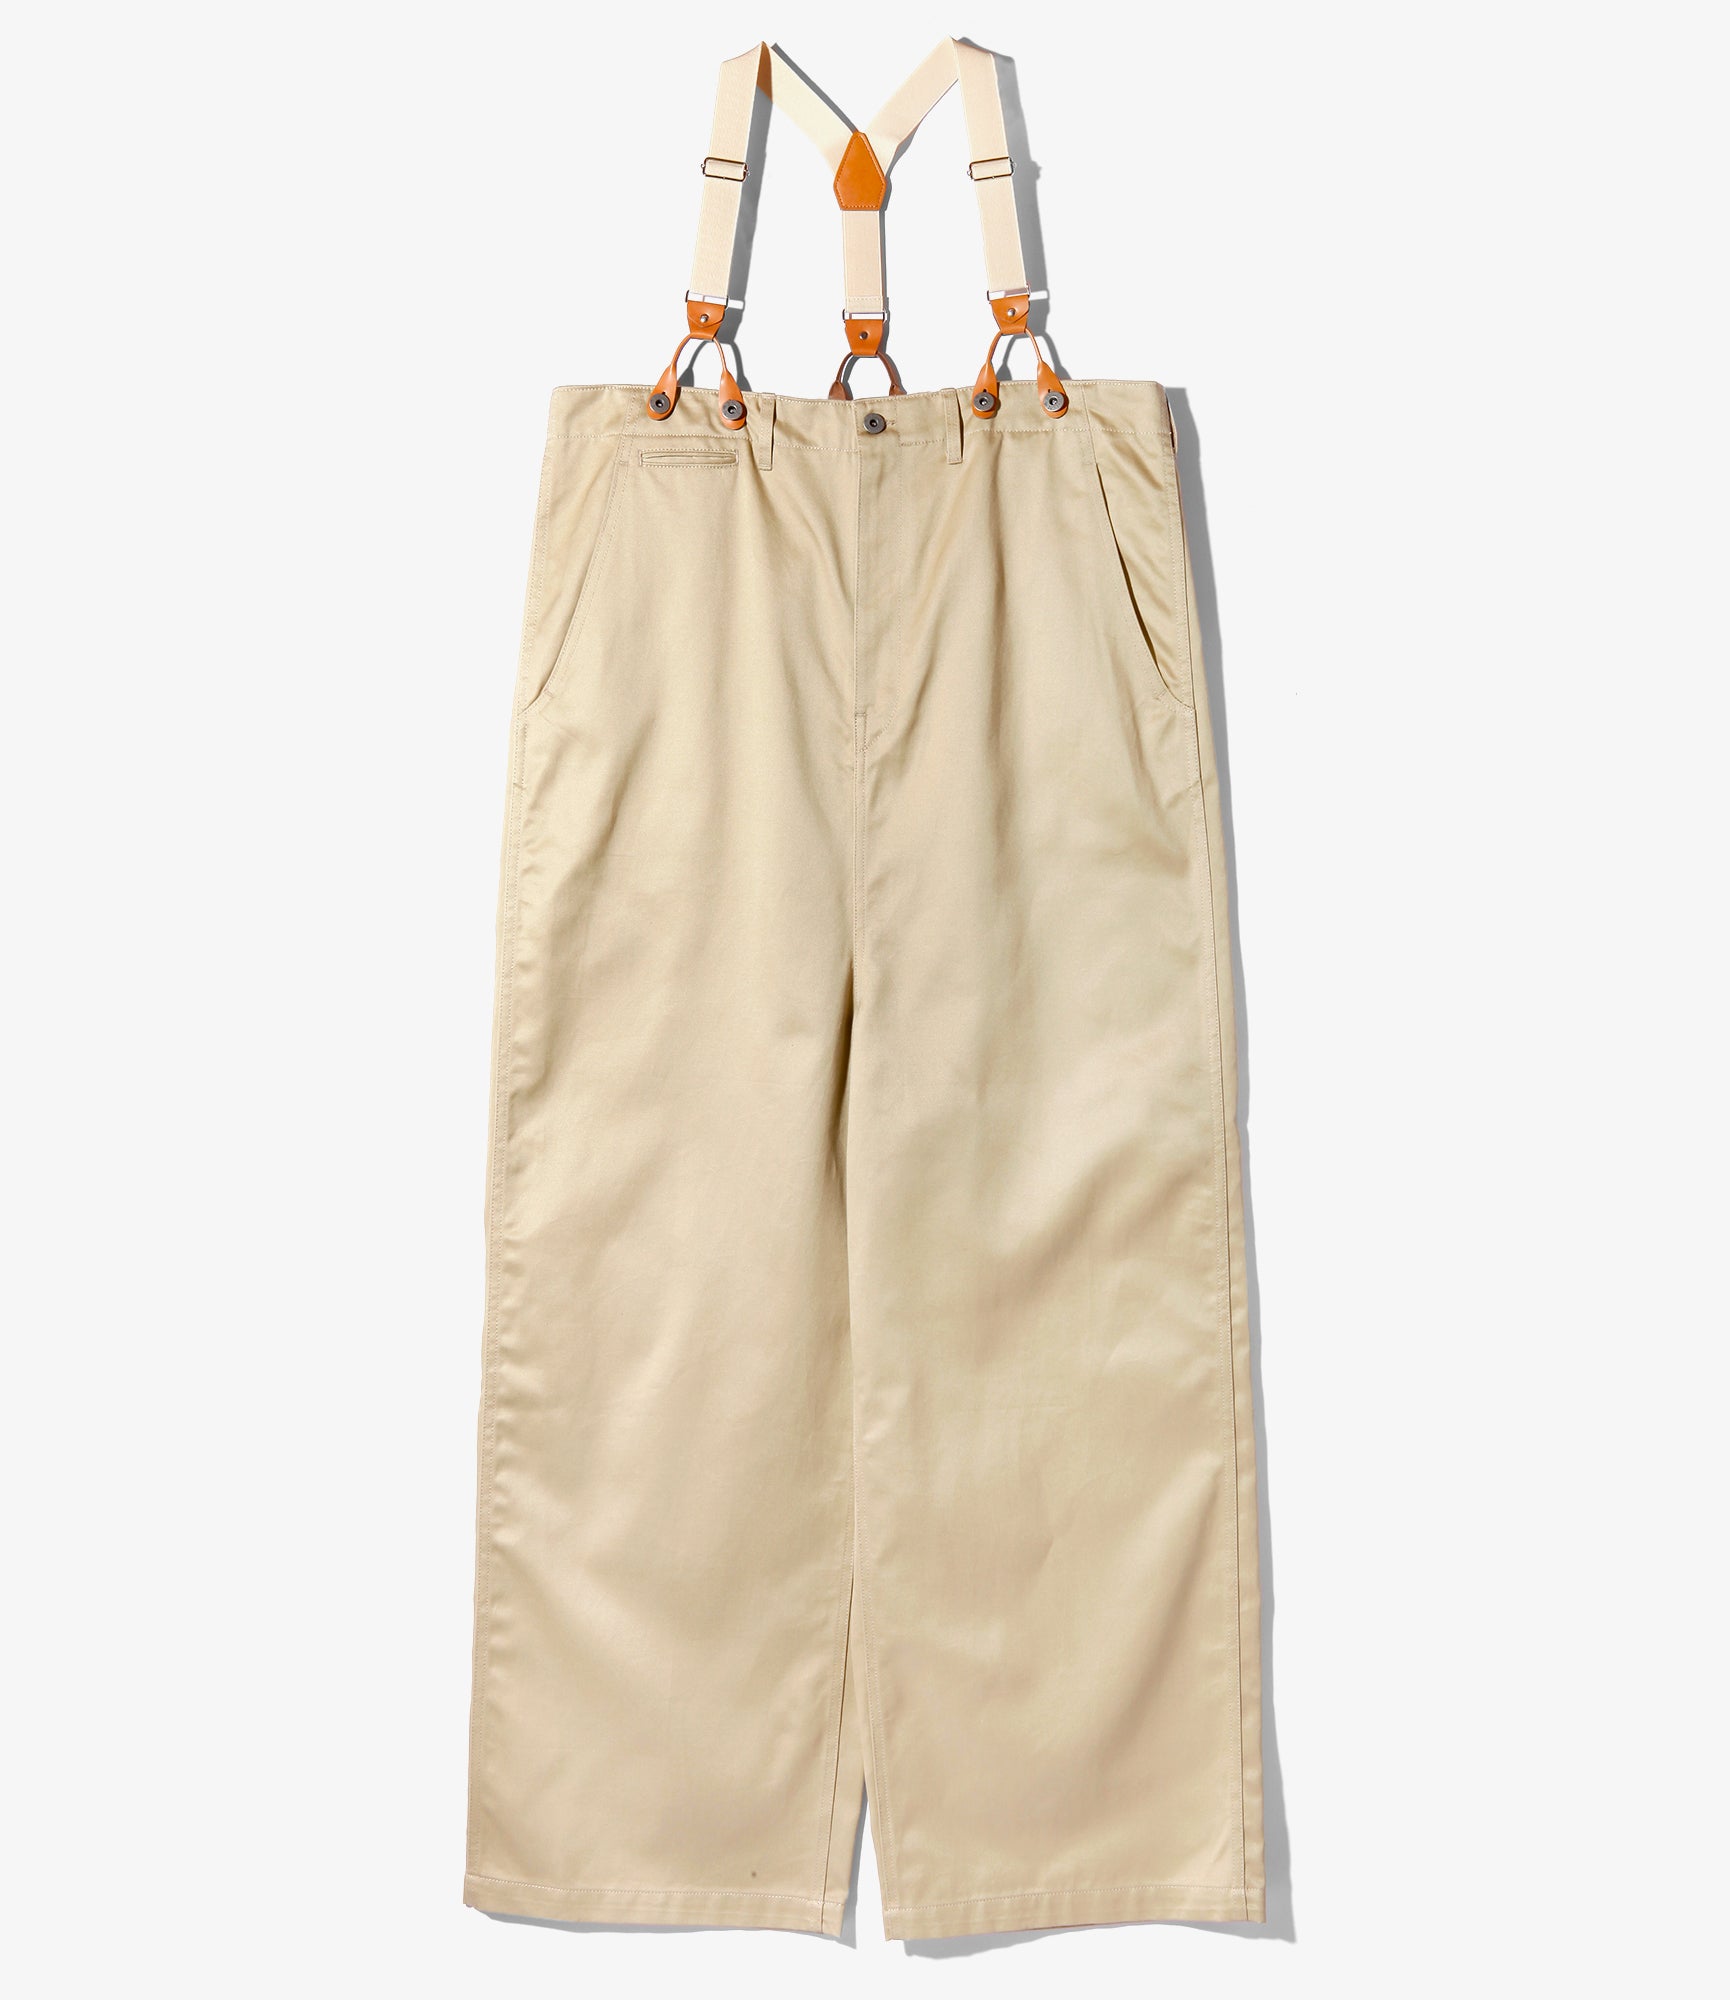 Army Chinos Suspenders Pant - Khaki